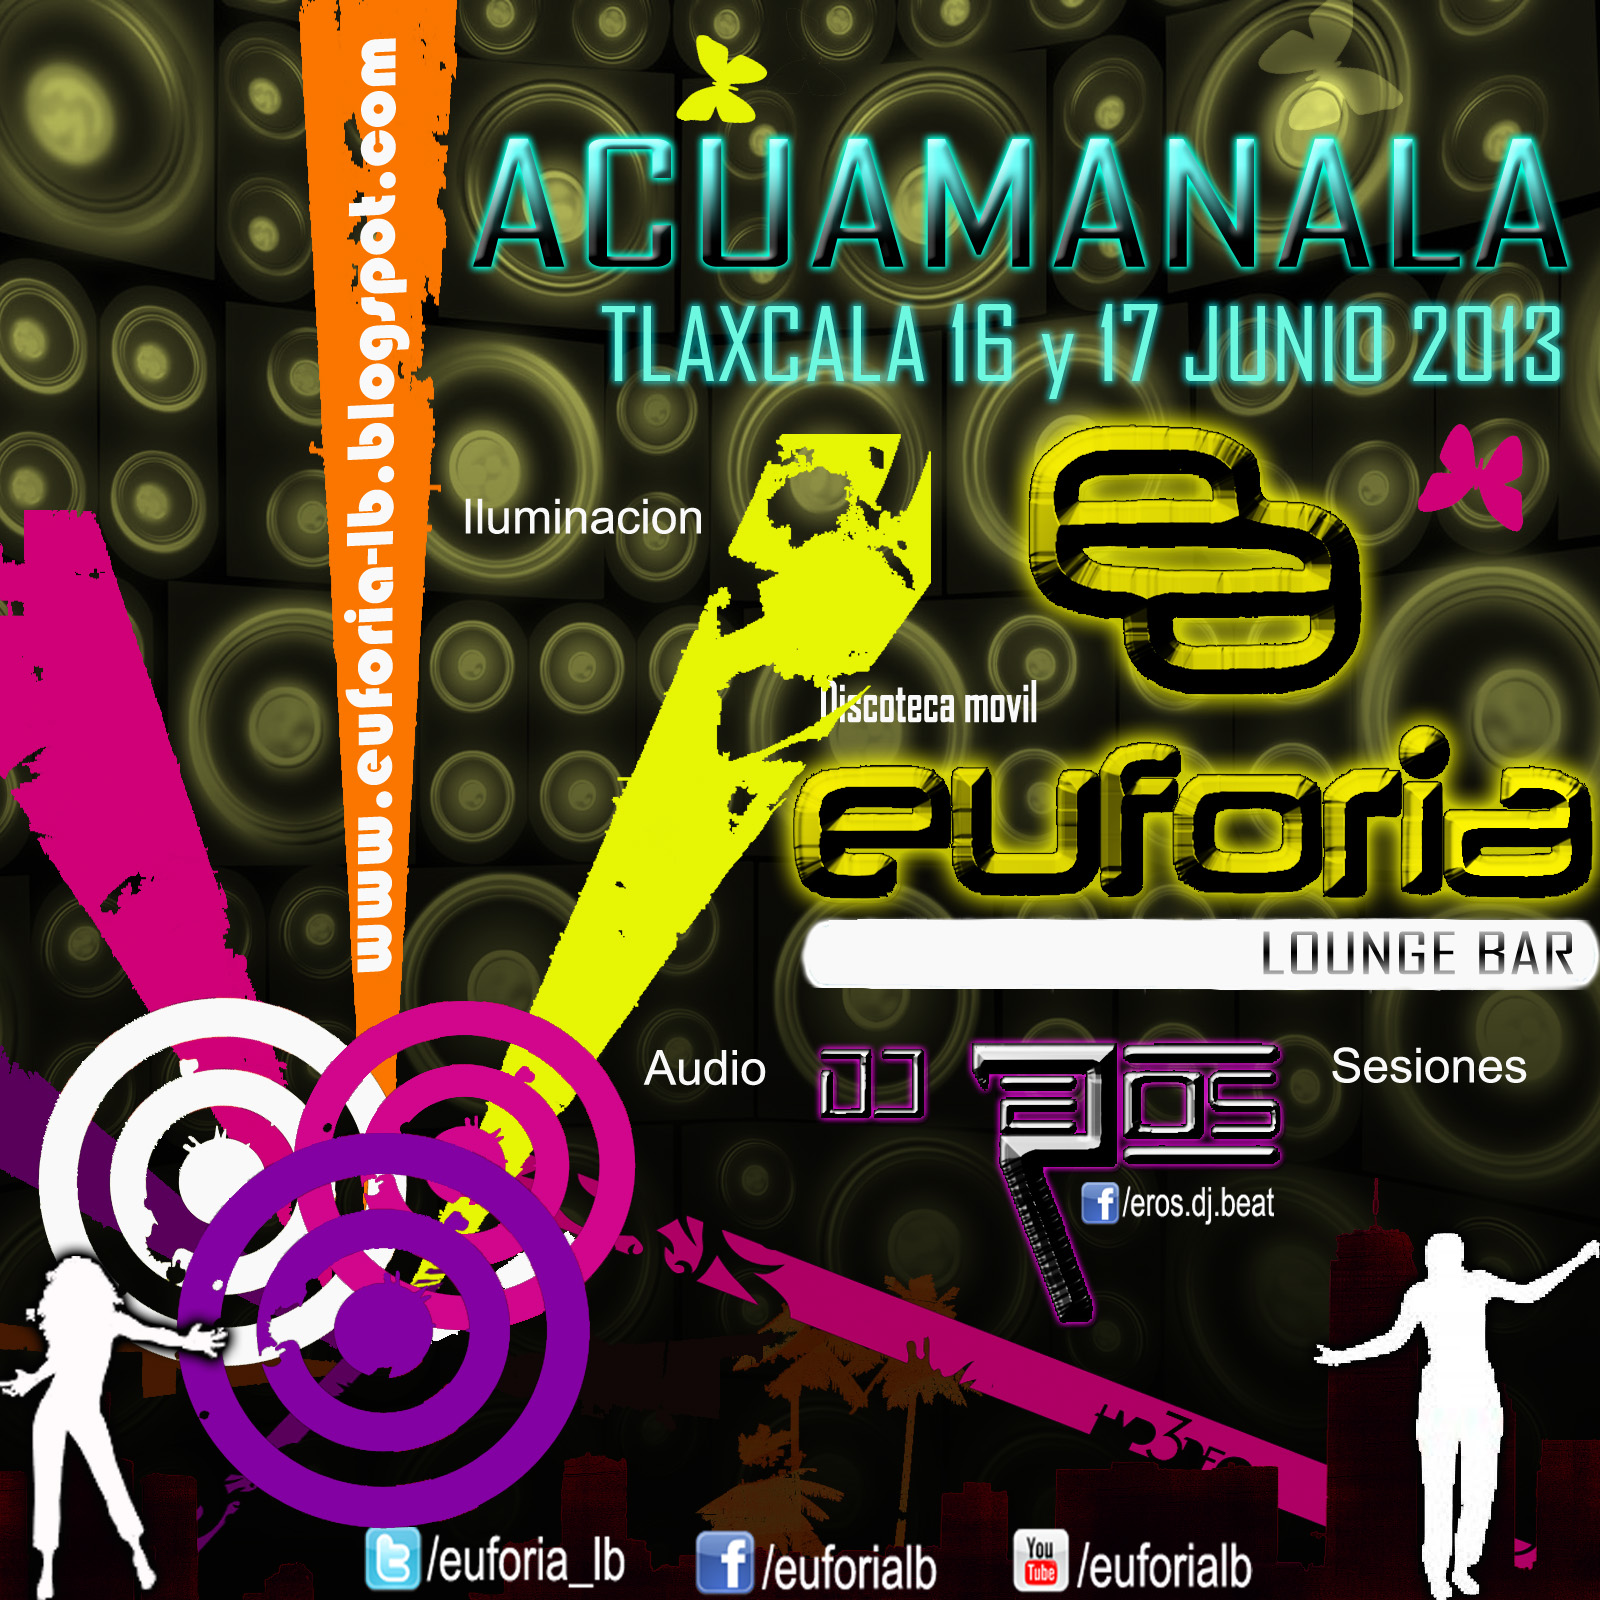 Evento: Sn. Antonio Acuamanala 16 y 17 de Junio del 2013